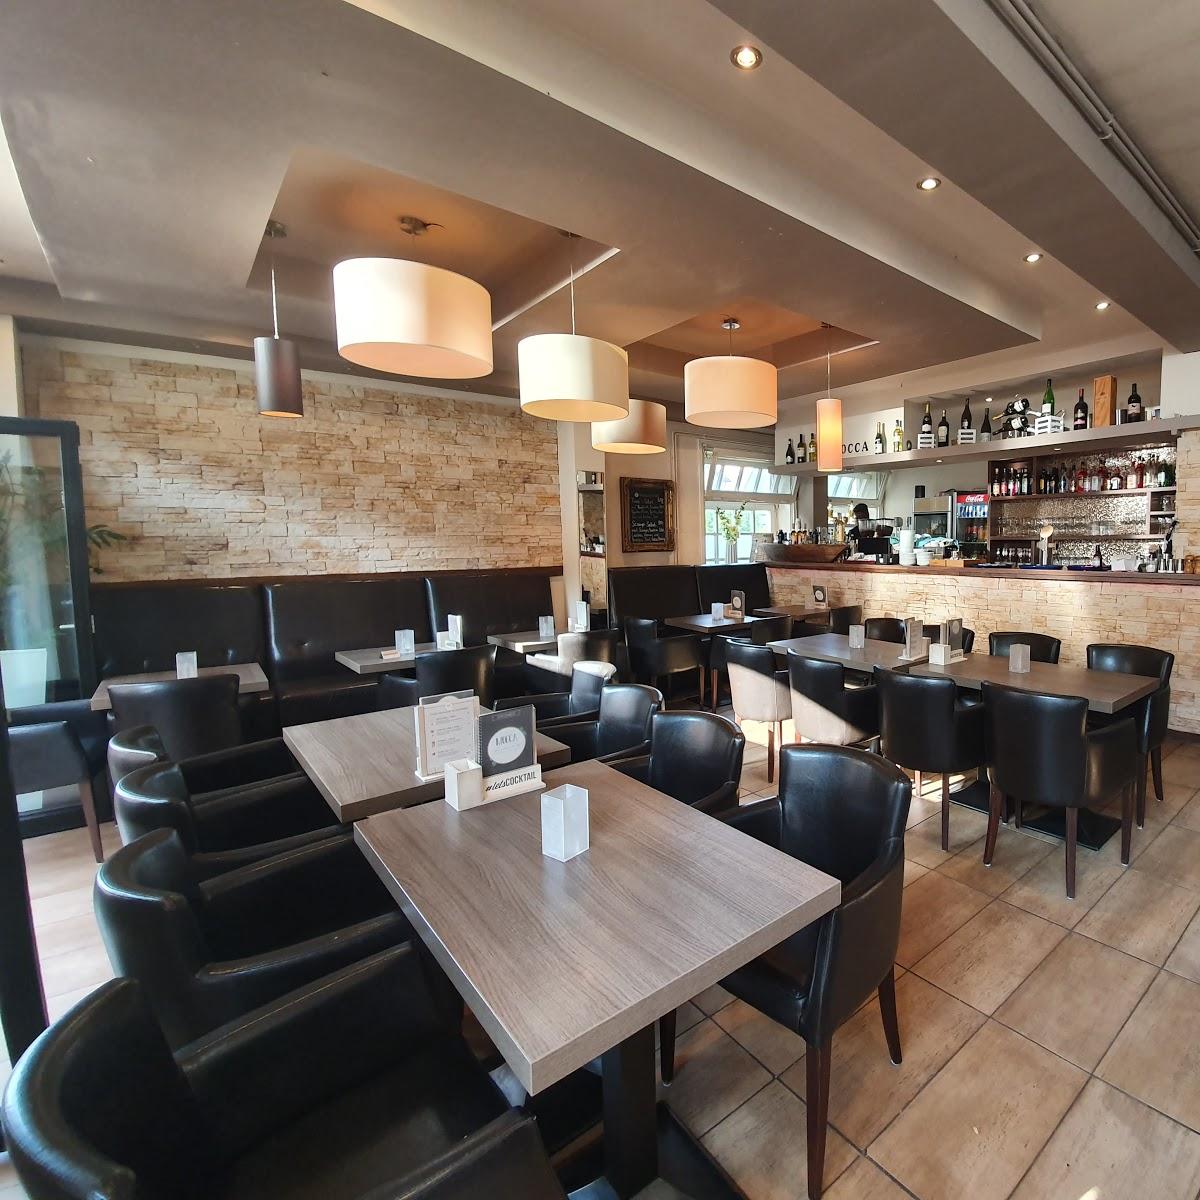 Restaurant "Café - Lounge - Bar Mocca" in Bad Oldesloe